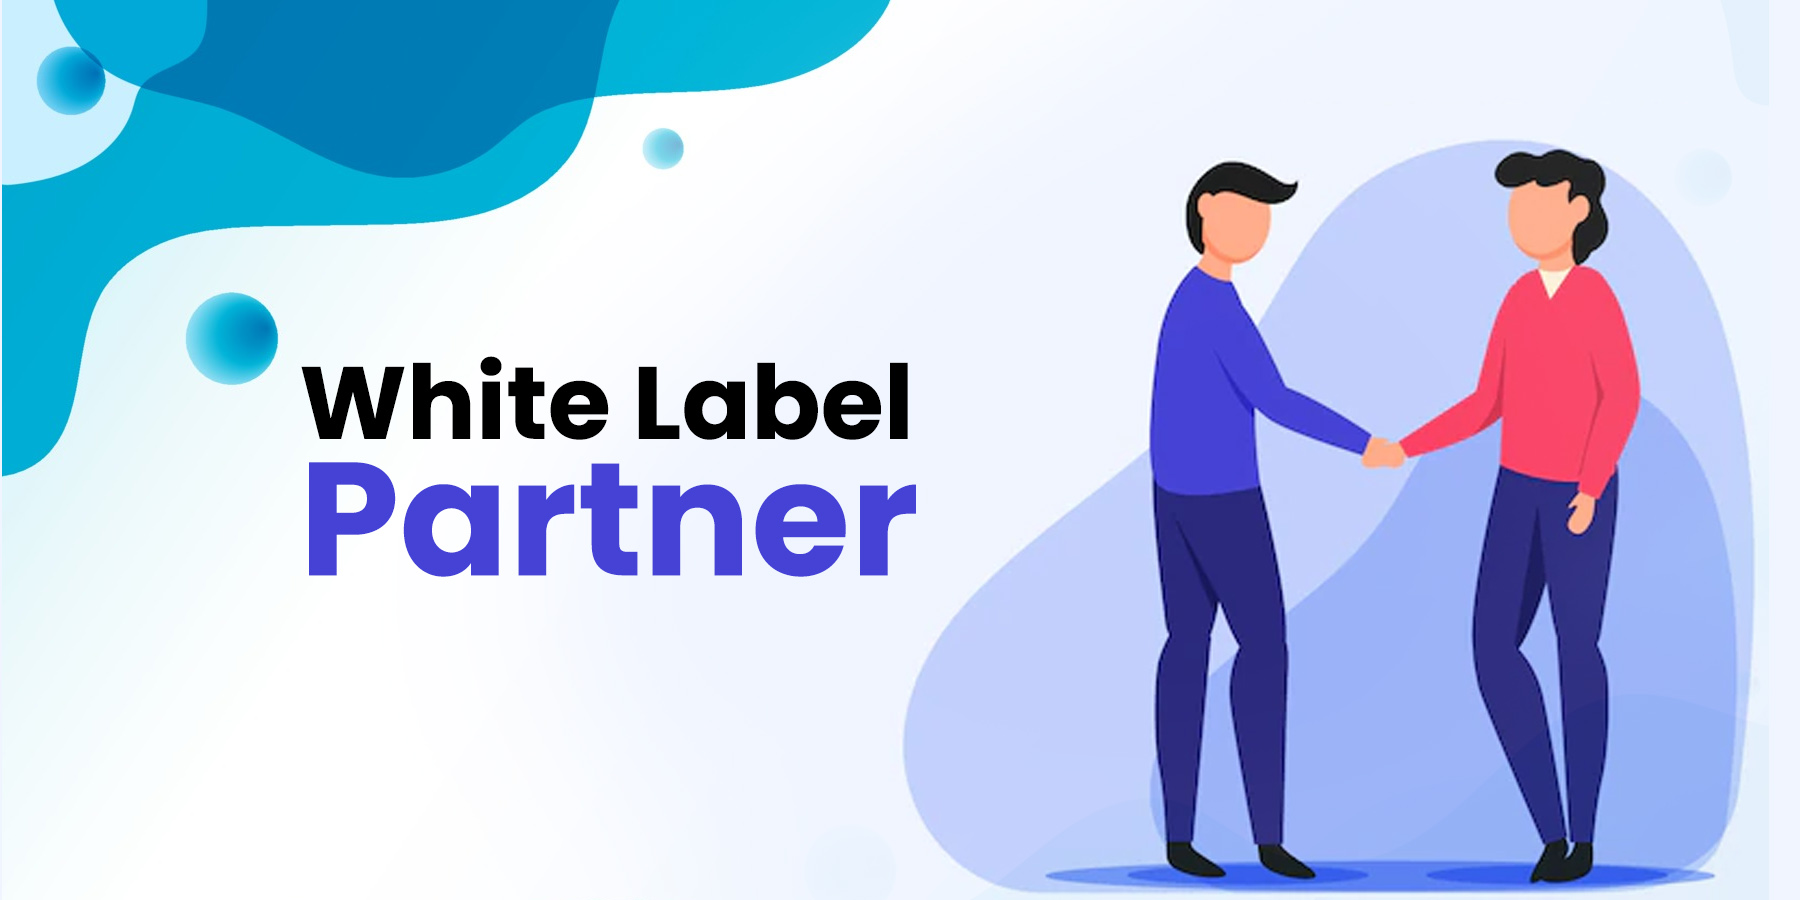 White Label Partner